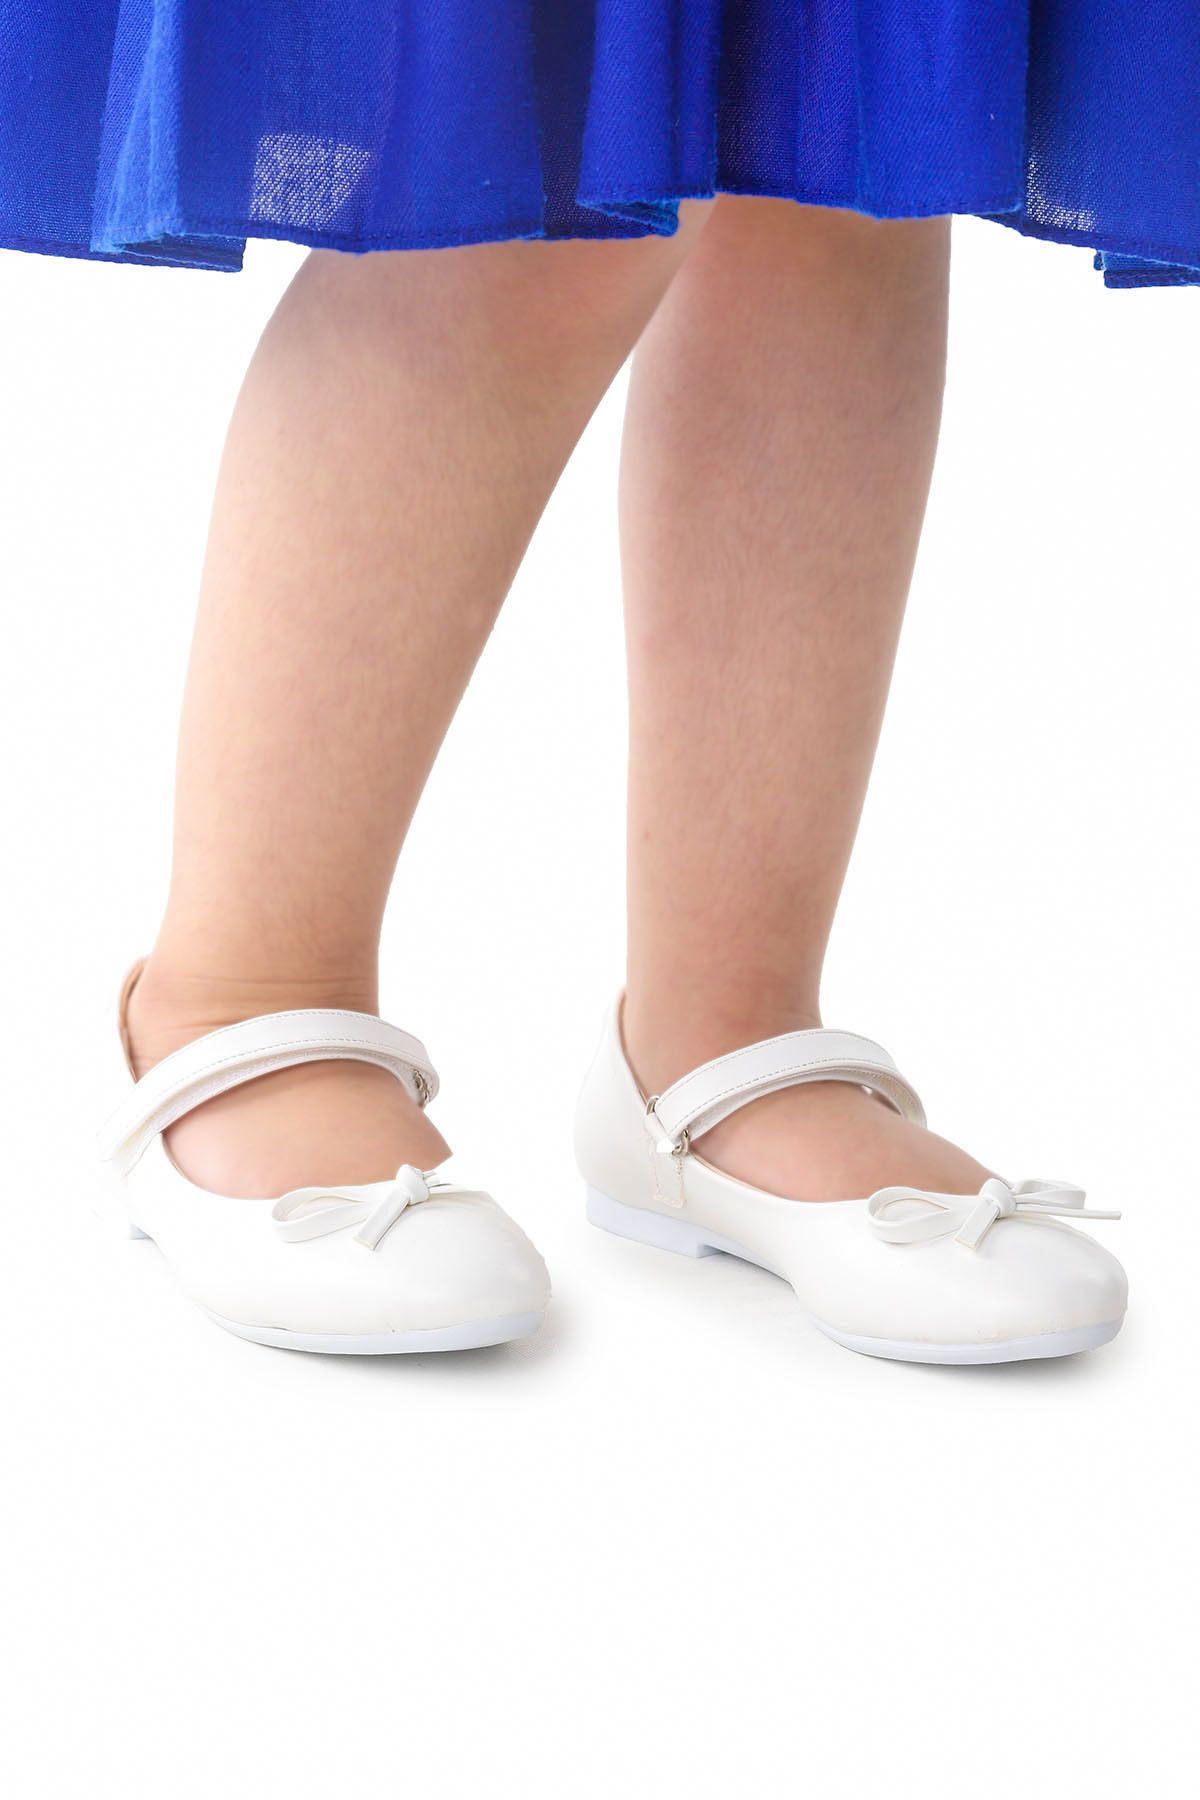 Kiko Kids Fiyonklu Cırtlı Kız Çocuk Babet Ayakkabı 201 Cilt